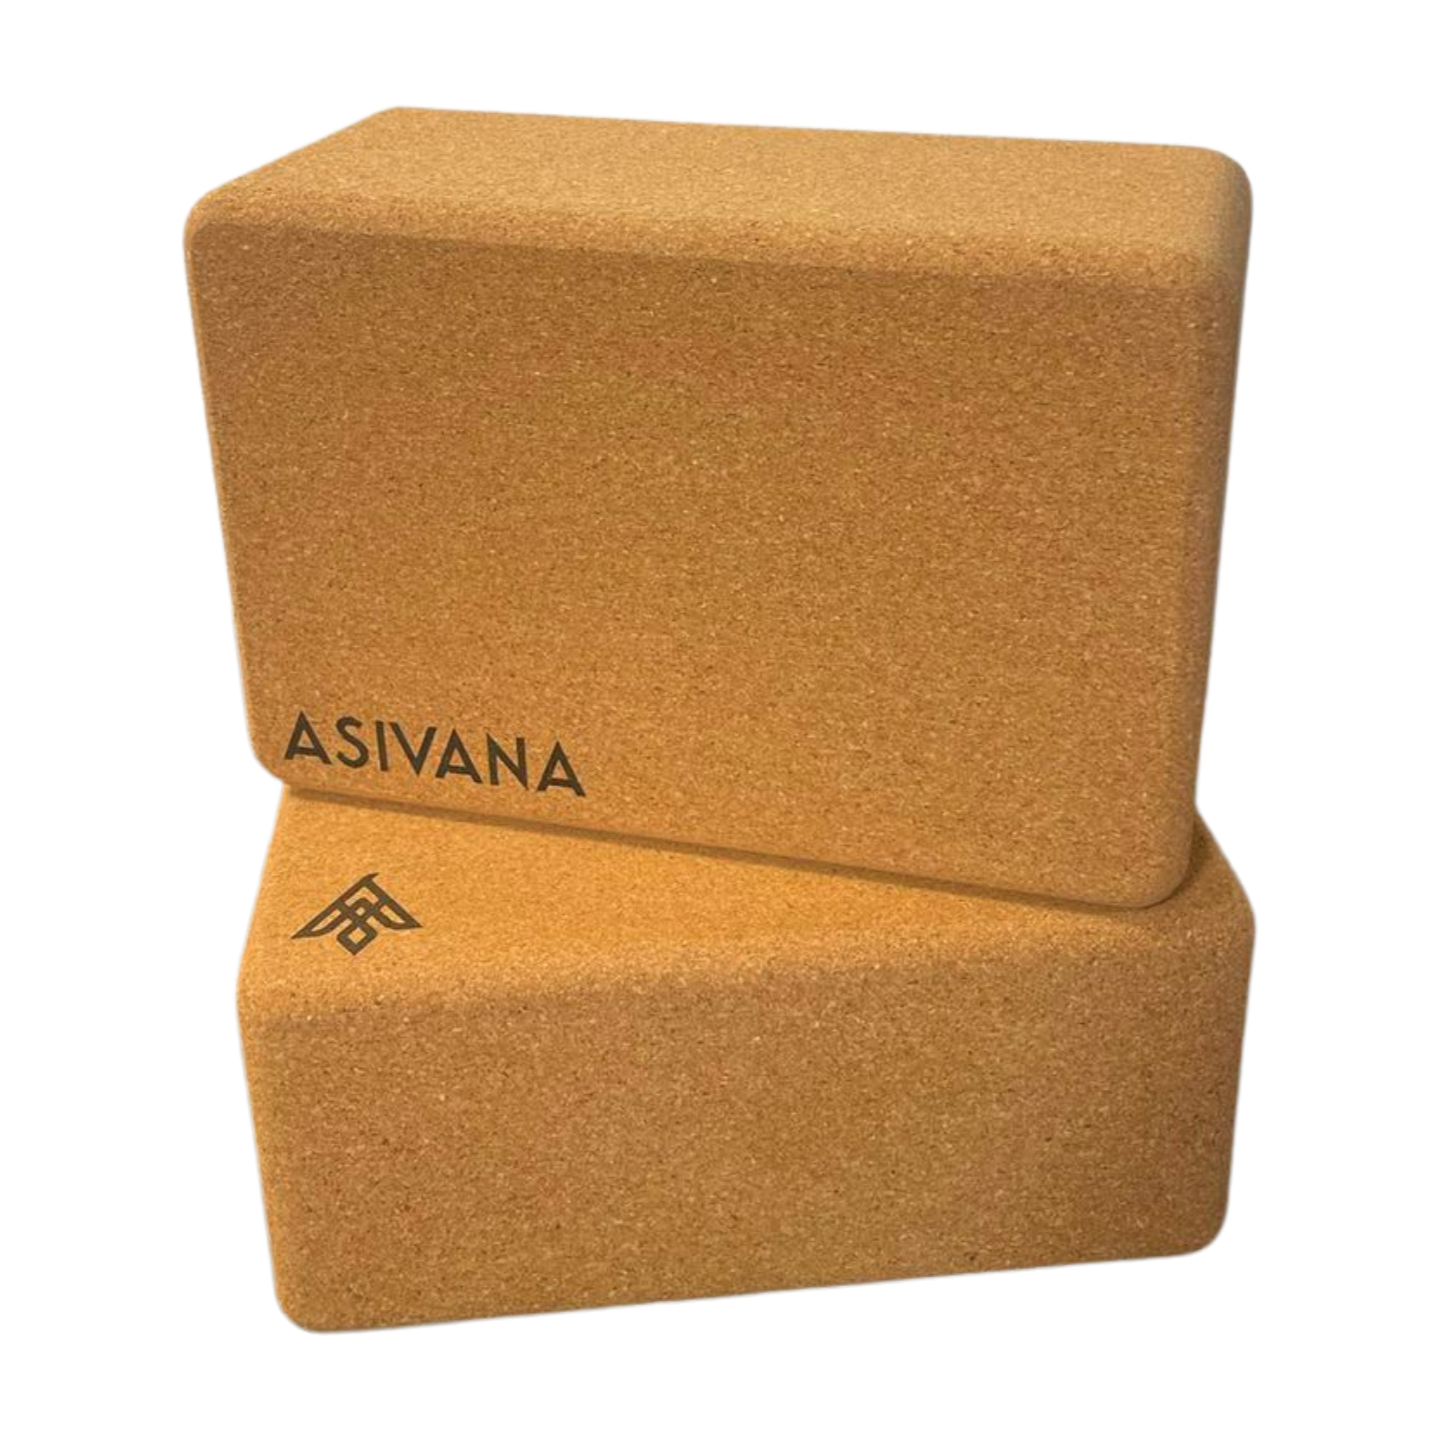 Asivana's Complete Yoga Kit for Beginners – Asivana Yoga